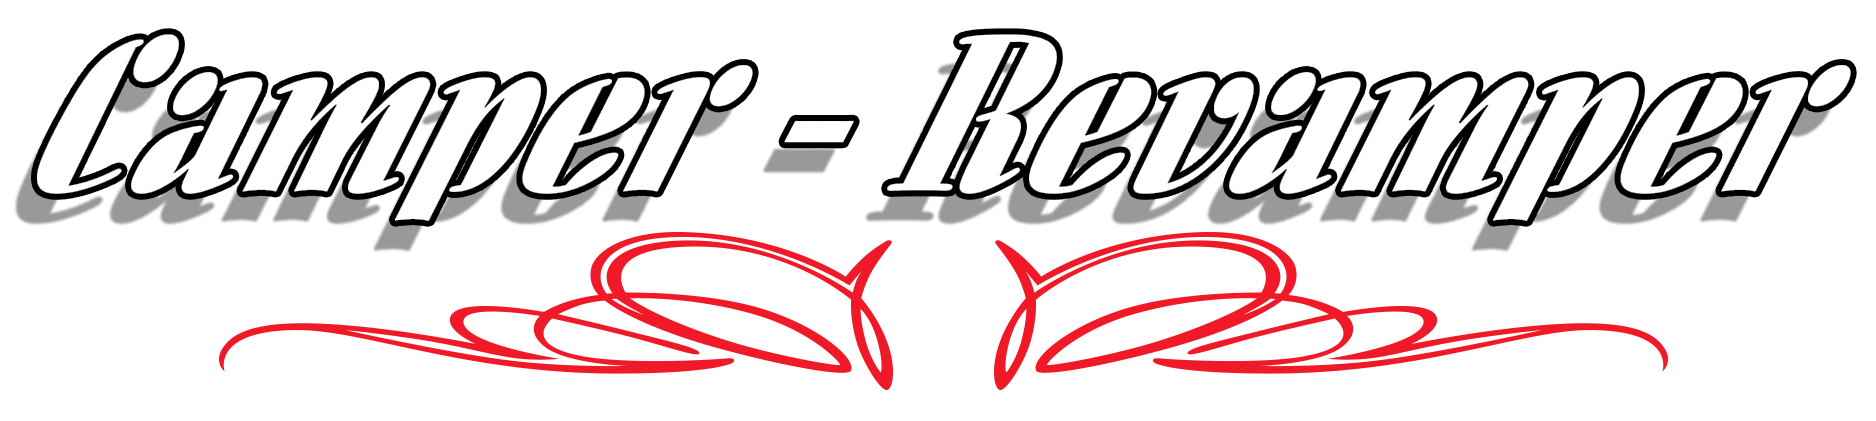 Camper Revamper's logo